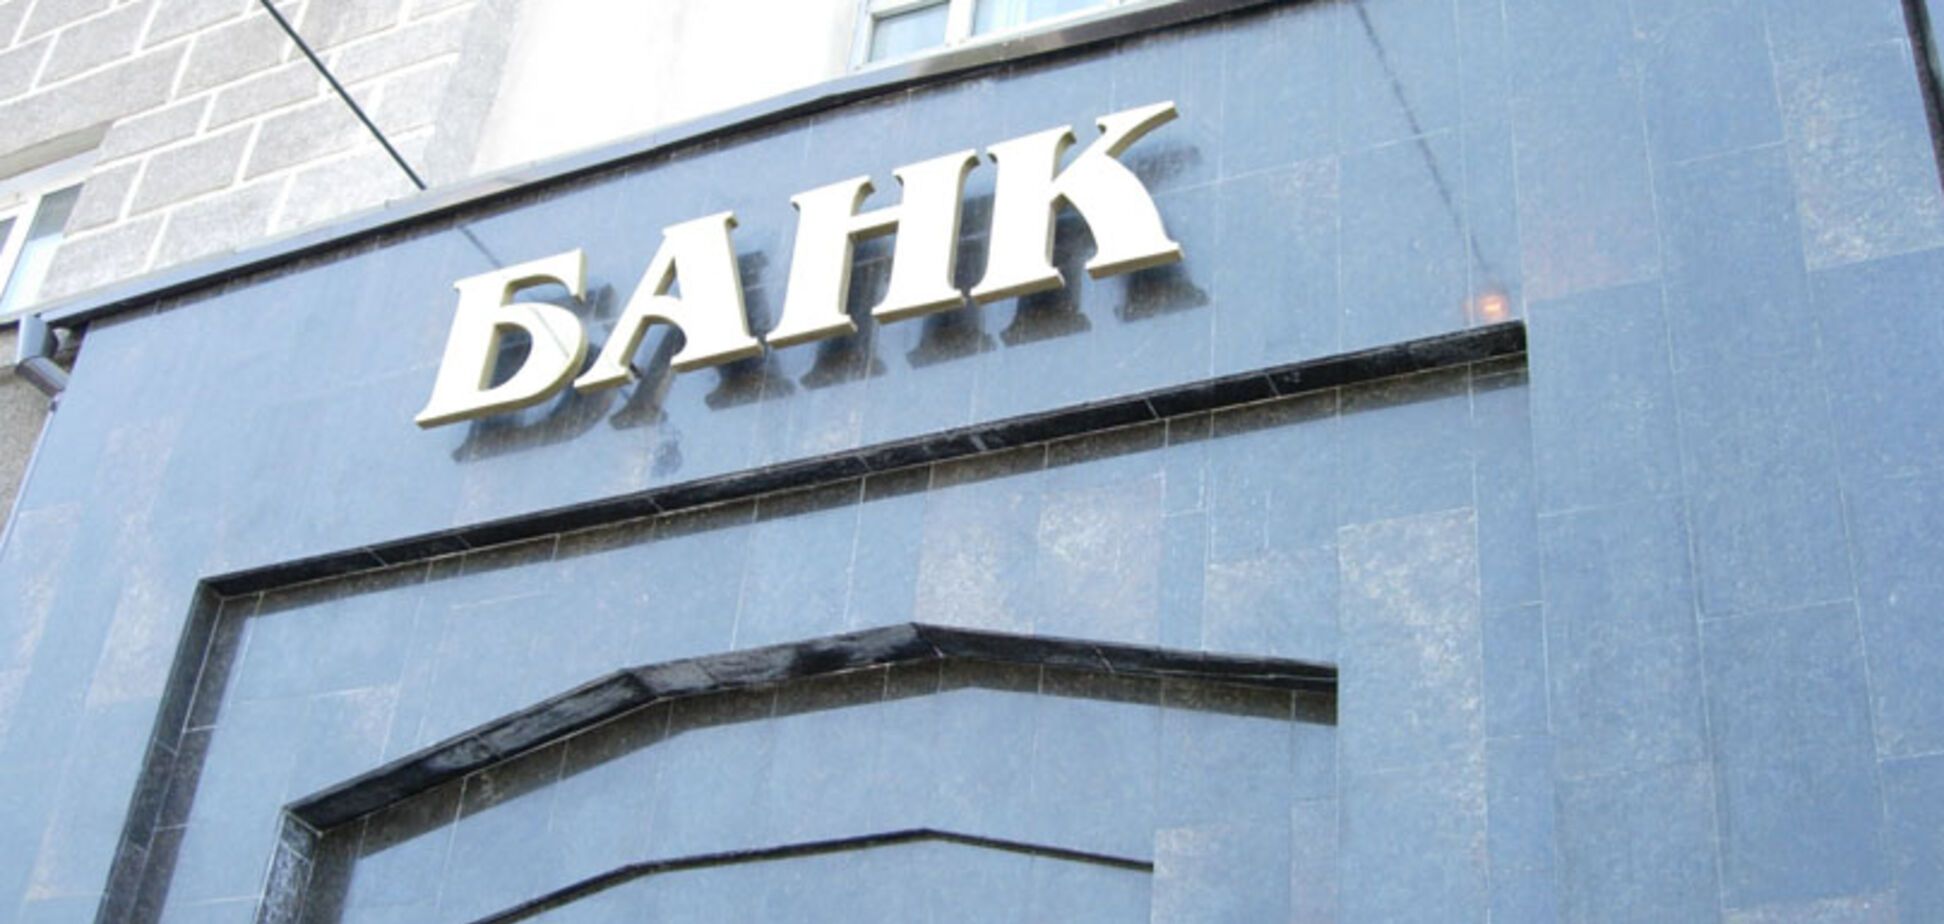 Схема на 300 млн: в Украине рассказали о махинациях с известным банком